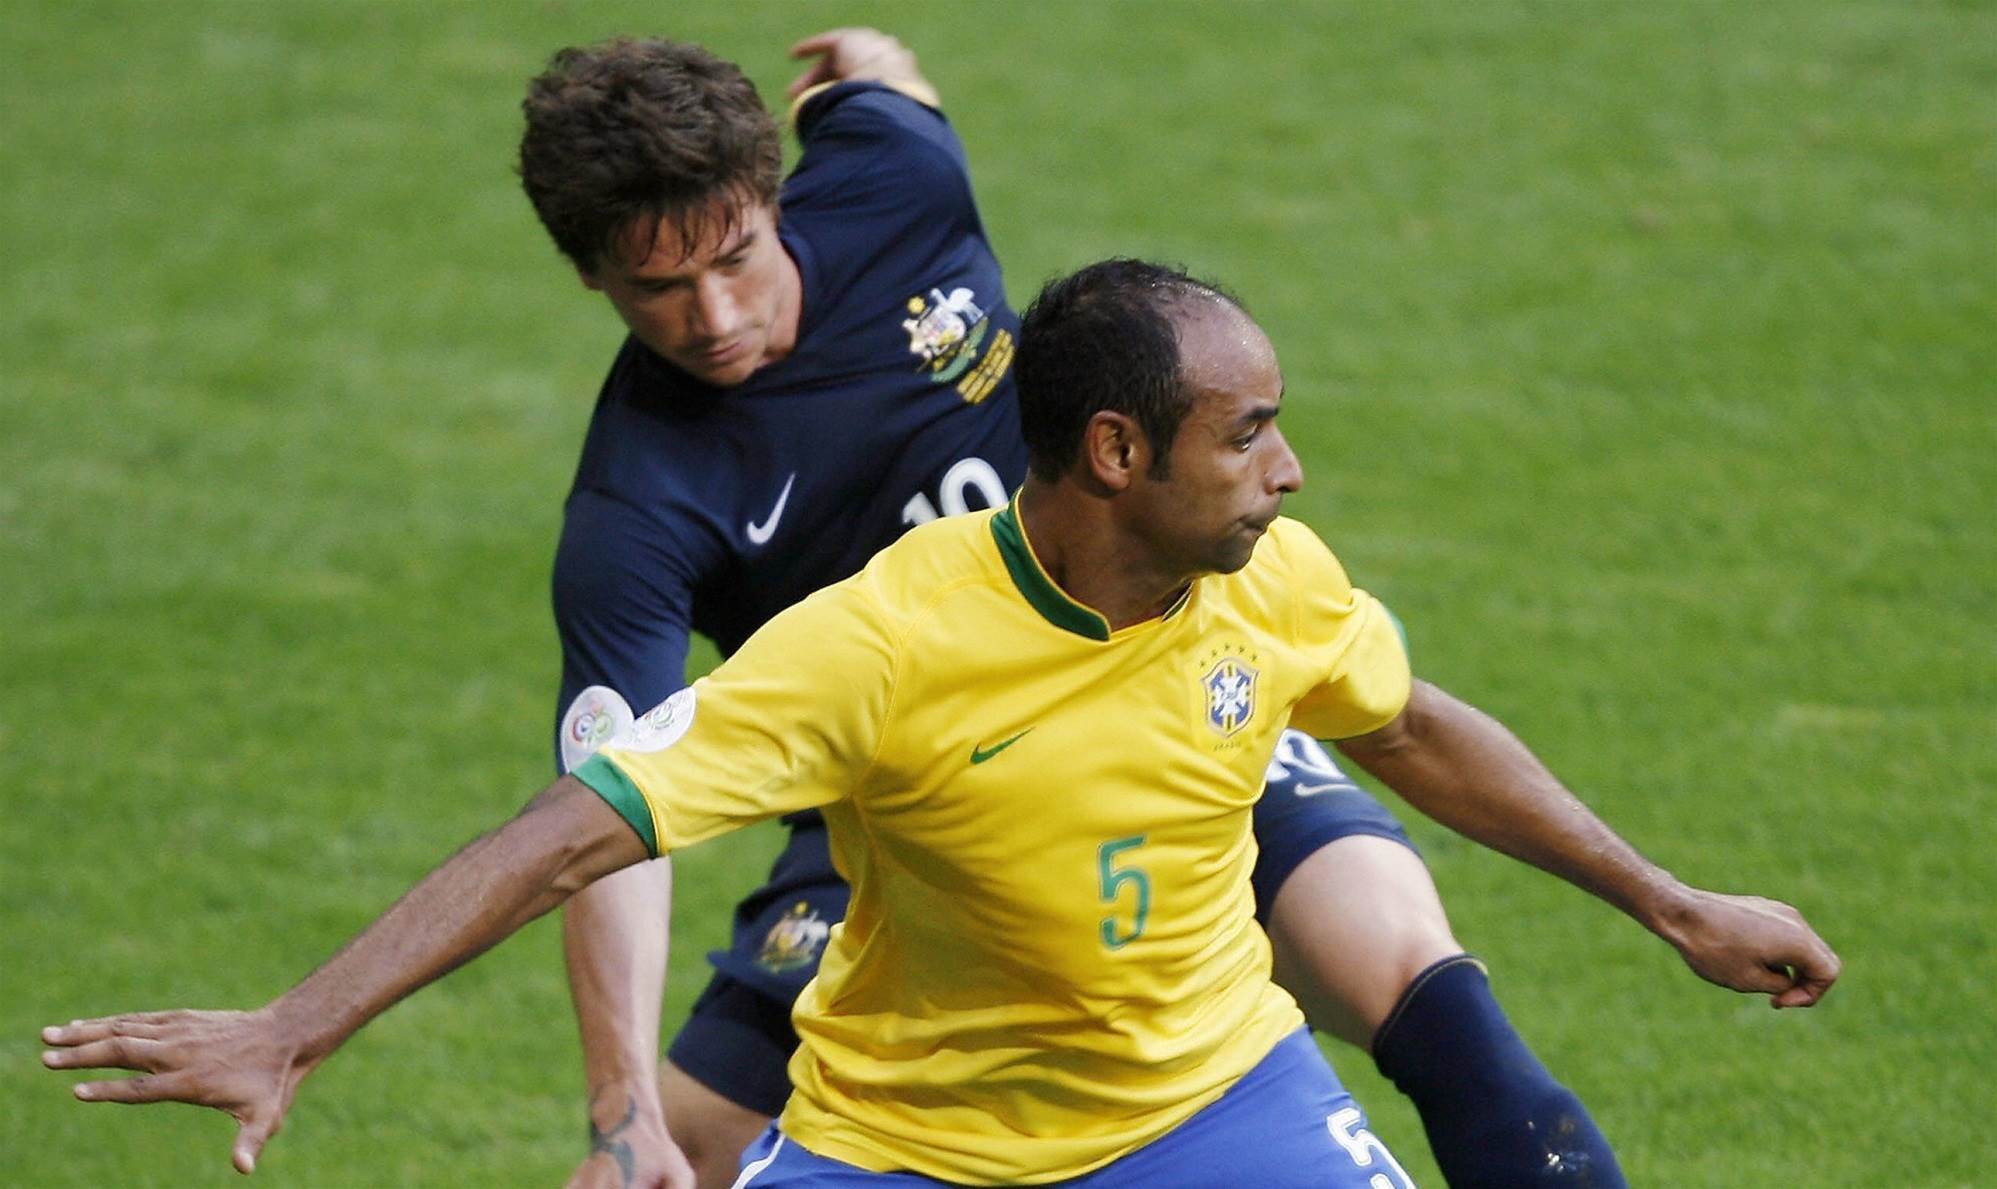 Hình ảnh: Emerson lẽ ra là đội trưởng của Brazil ở World Cup 2002